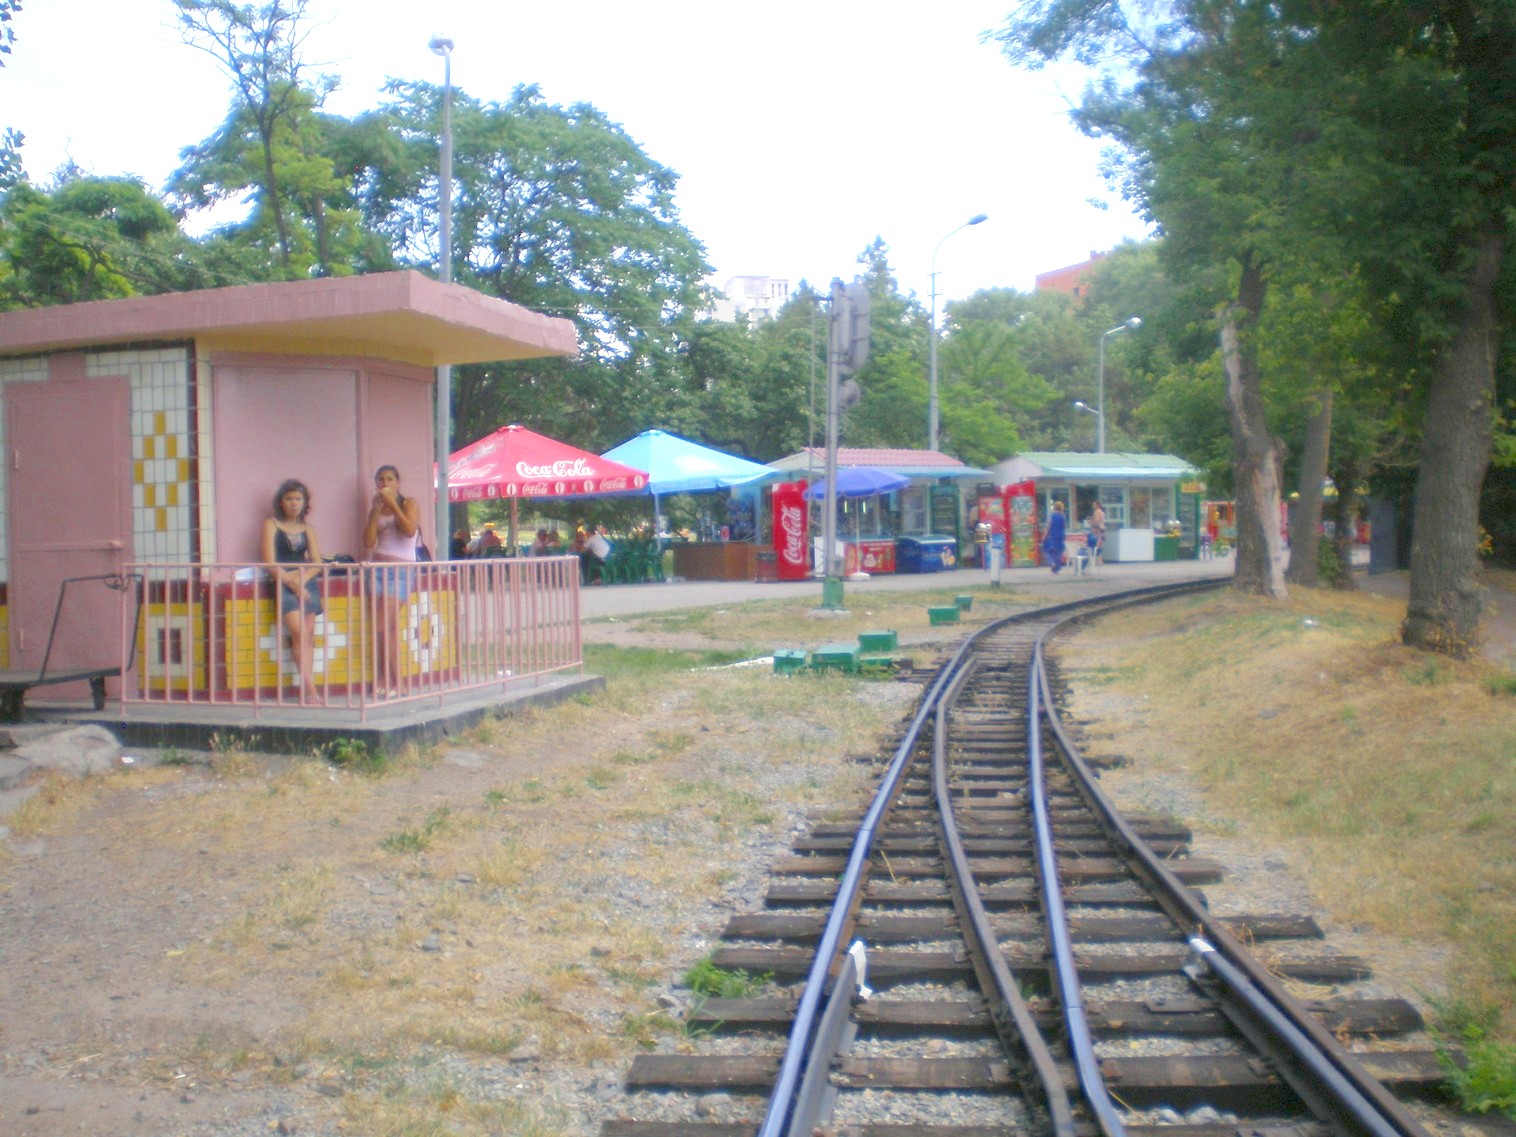 Малая Приднепровская (Днепропетровская) детская железная дорога  —  фотографии, сделанные в 2009 году (часть 4)